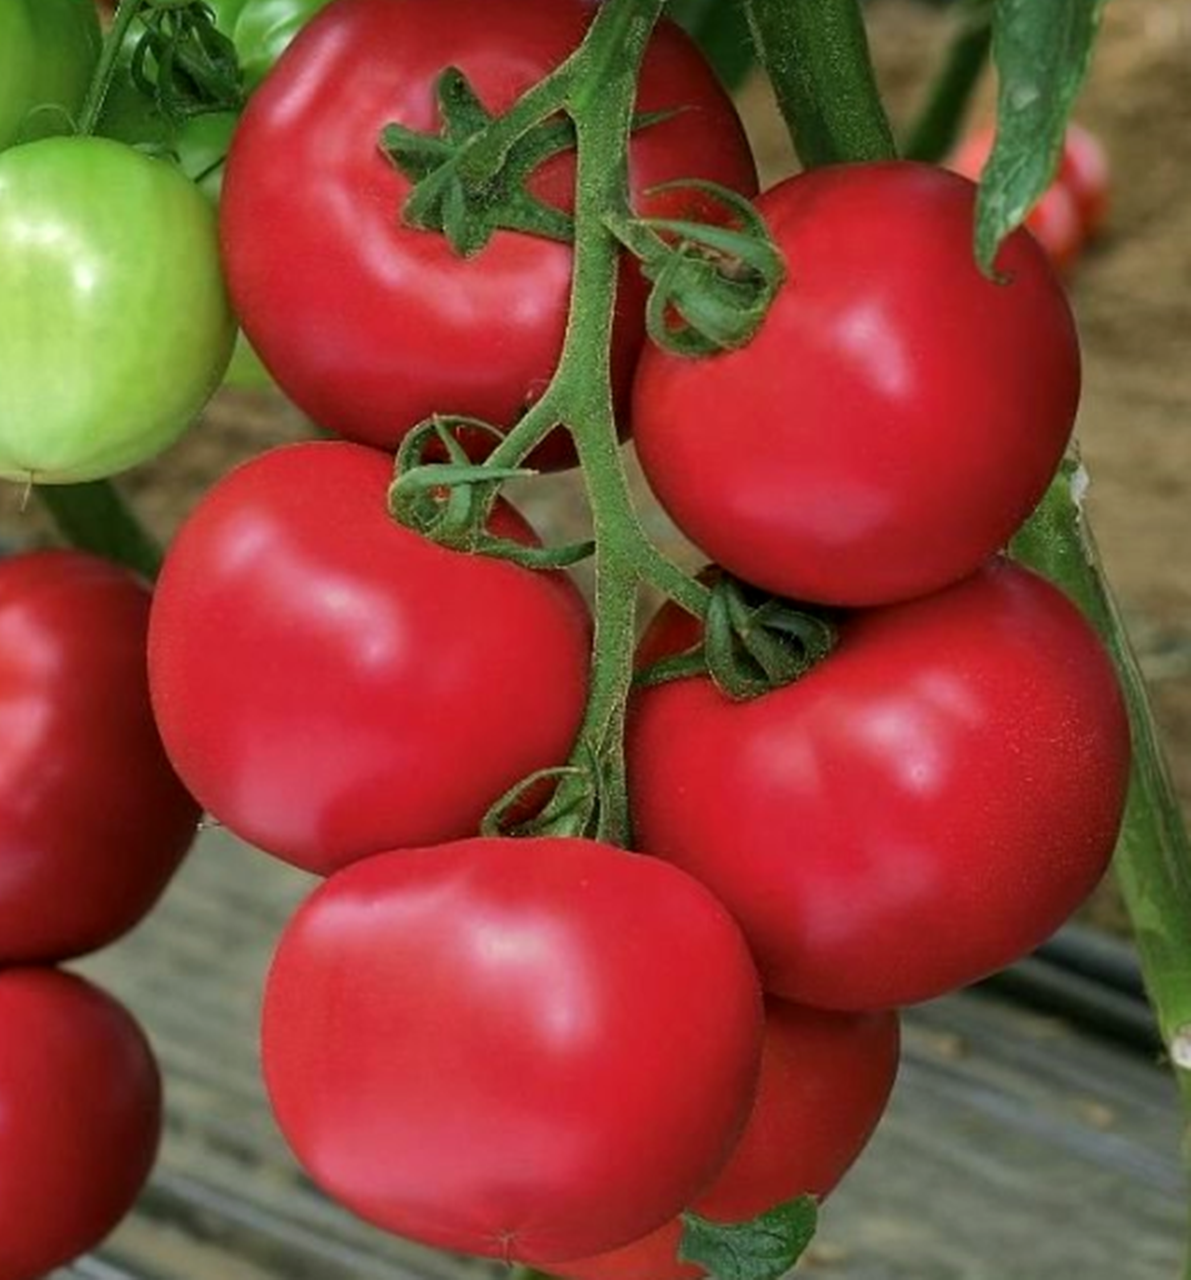 Выращивание томата пинк парадайз